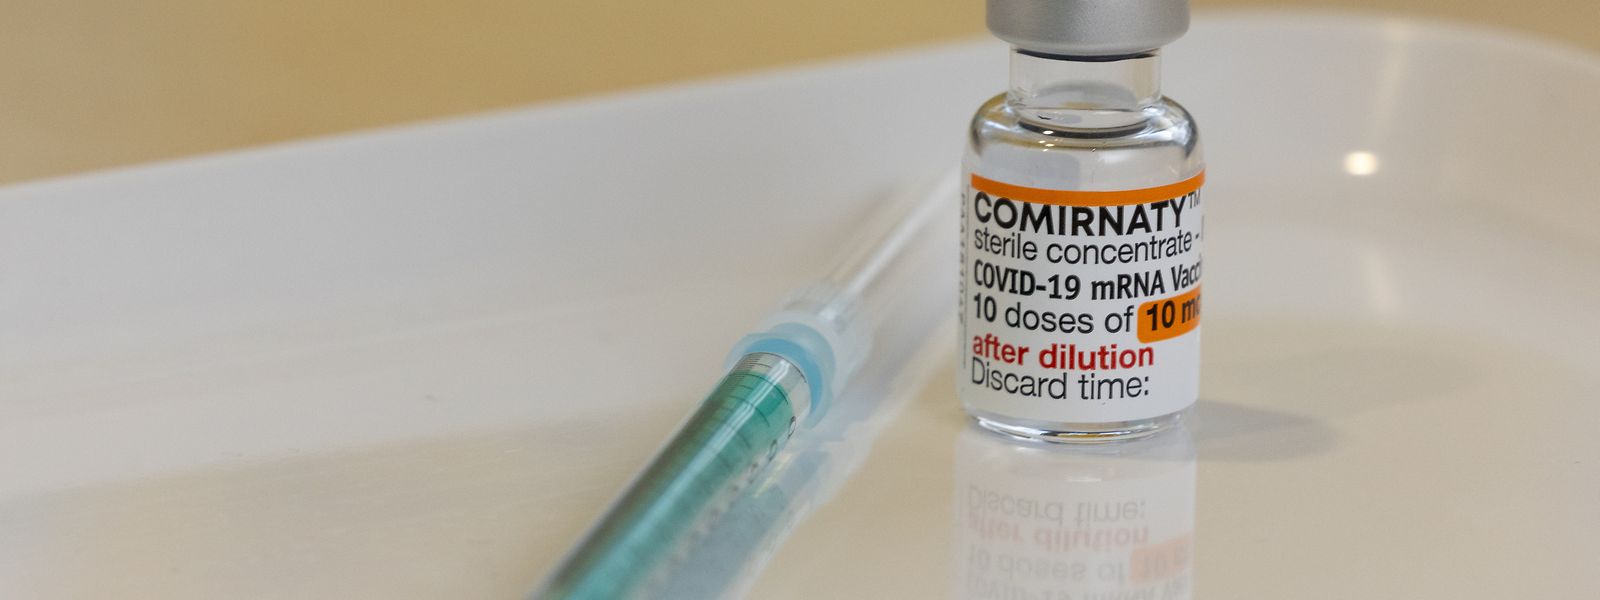 Le ministère de la Santé indique qu'aucun risque n'est à craindre pour une personne effectuant sa vaccination anti-covid tout en étant positif.